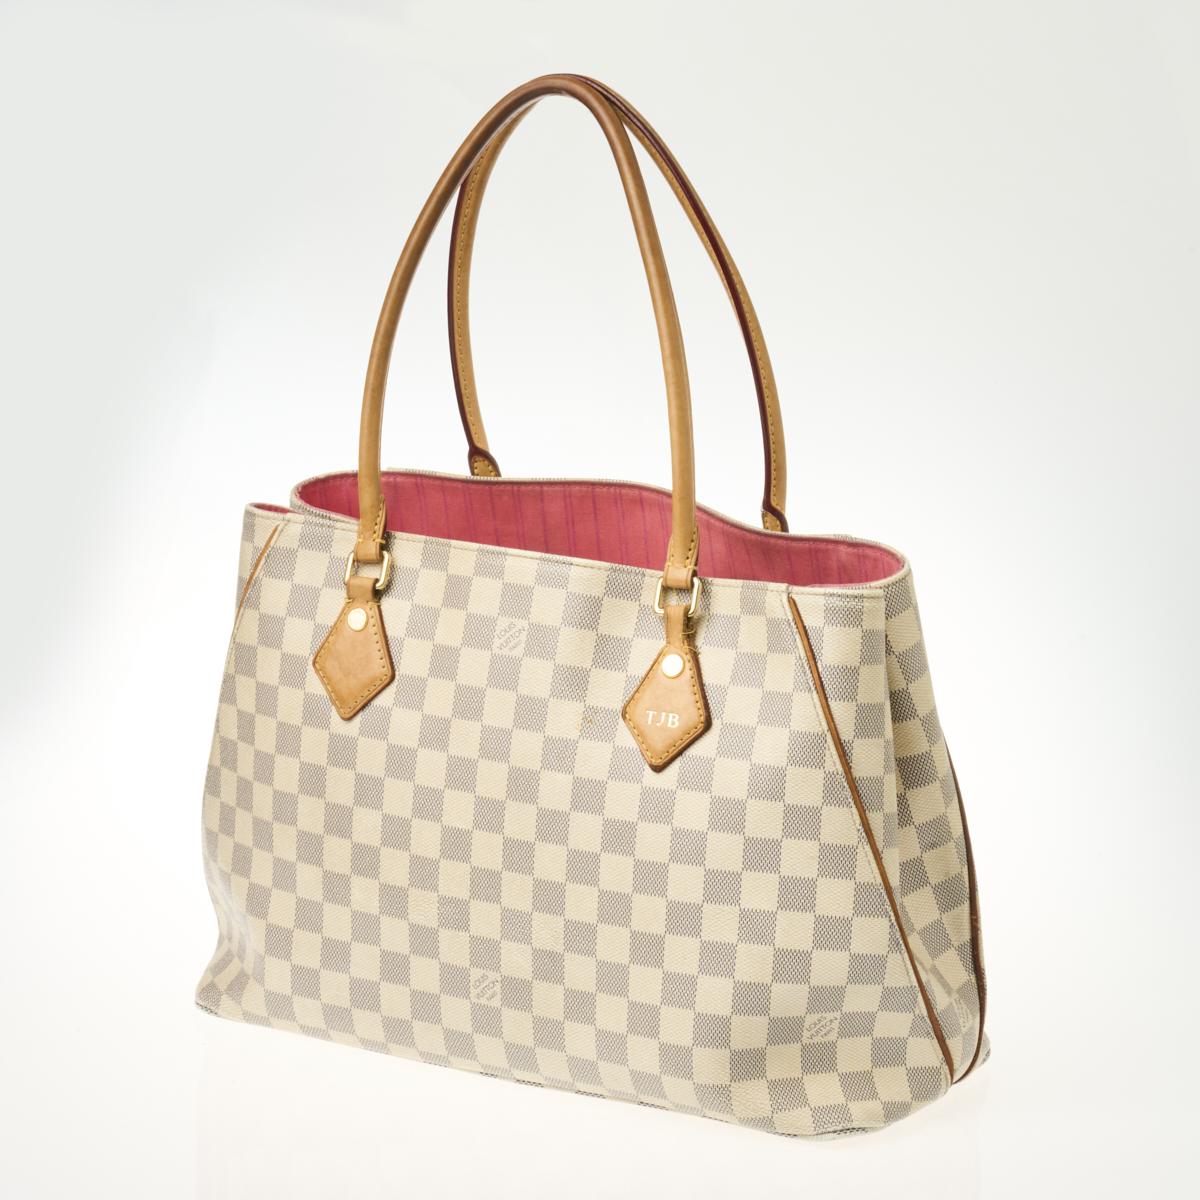 Louis Vuitton, Bags, Louis Vuitton Calvi Sold